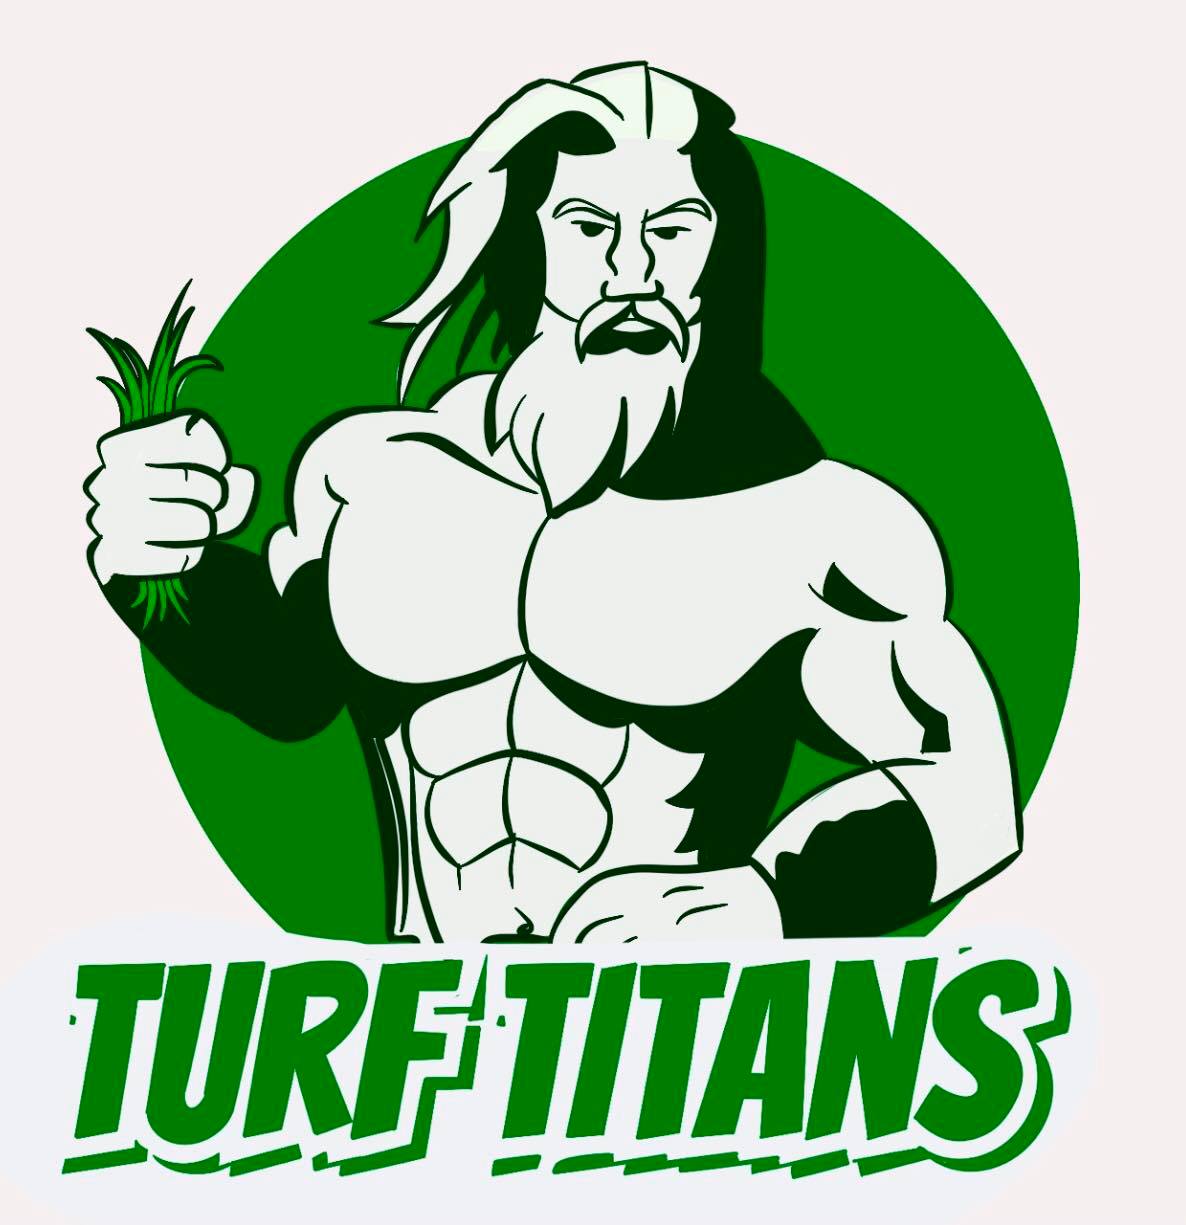 Turf Titans Logo